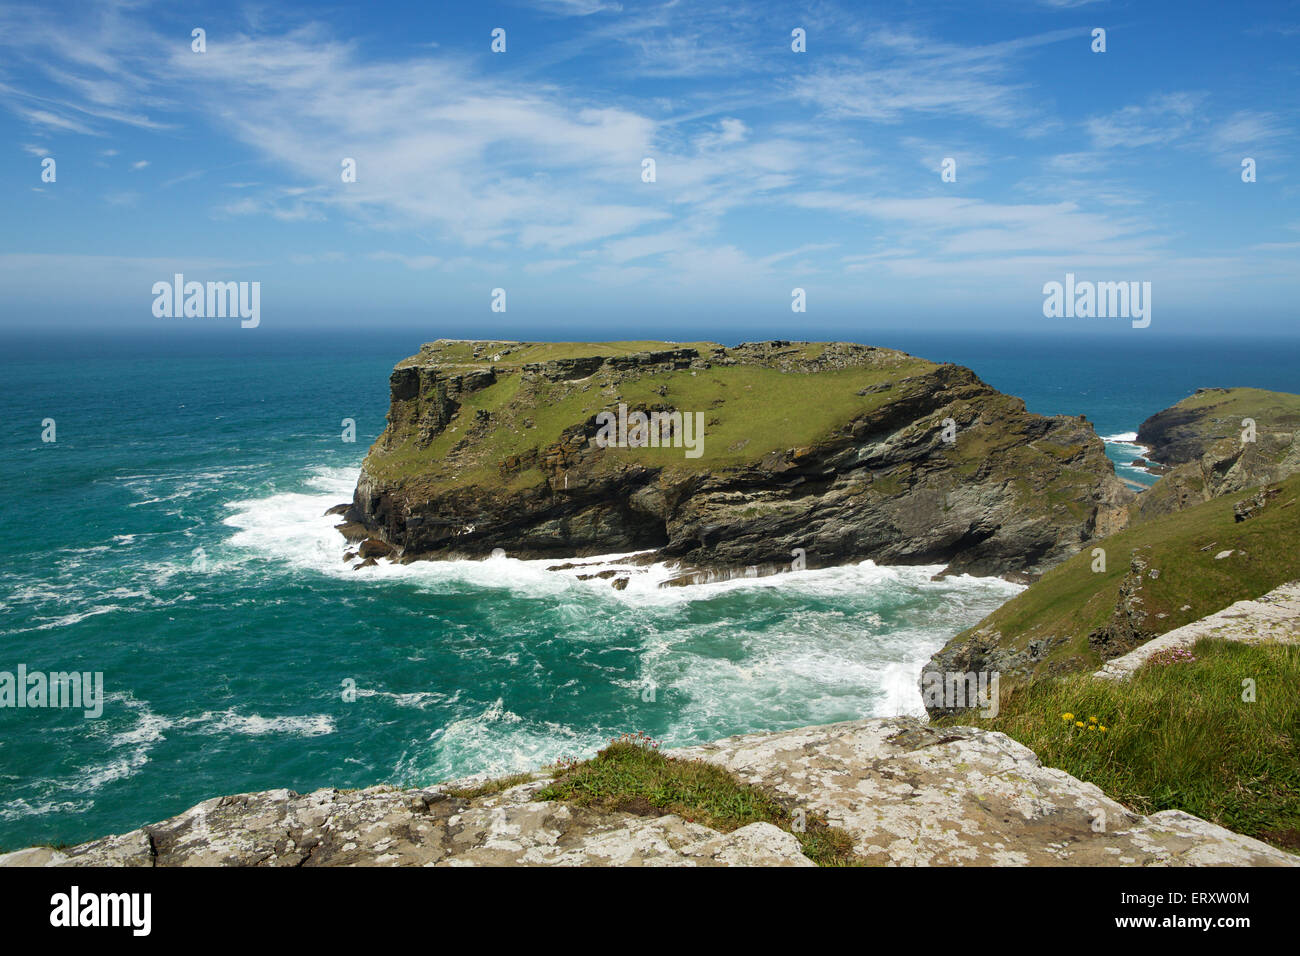 Berühmten Klippen von Tintagel Cornwall zeigt den Standort des Schlosses. Klaren Tag mit blauem Himmel und einem schweren Wellengang im Meer. Stockfoto